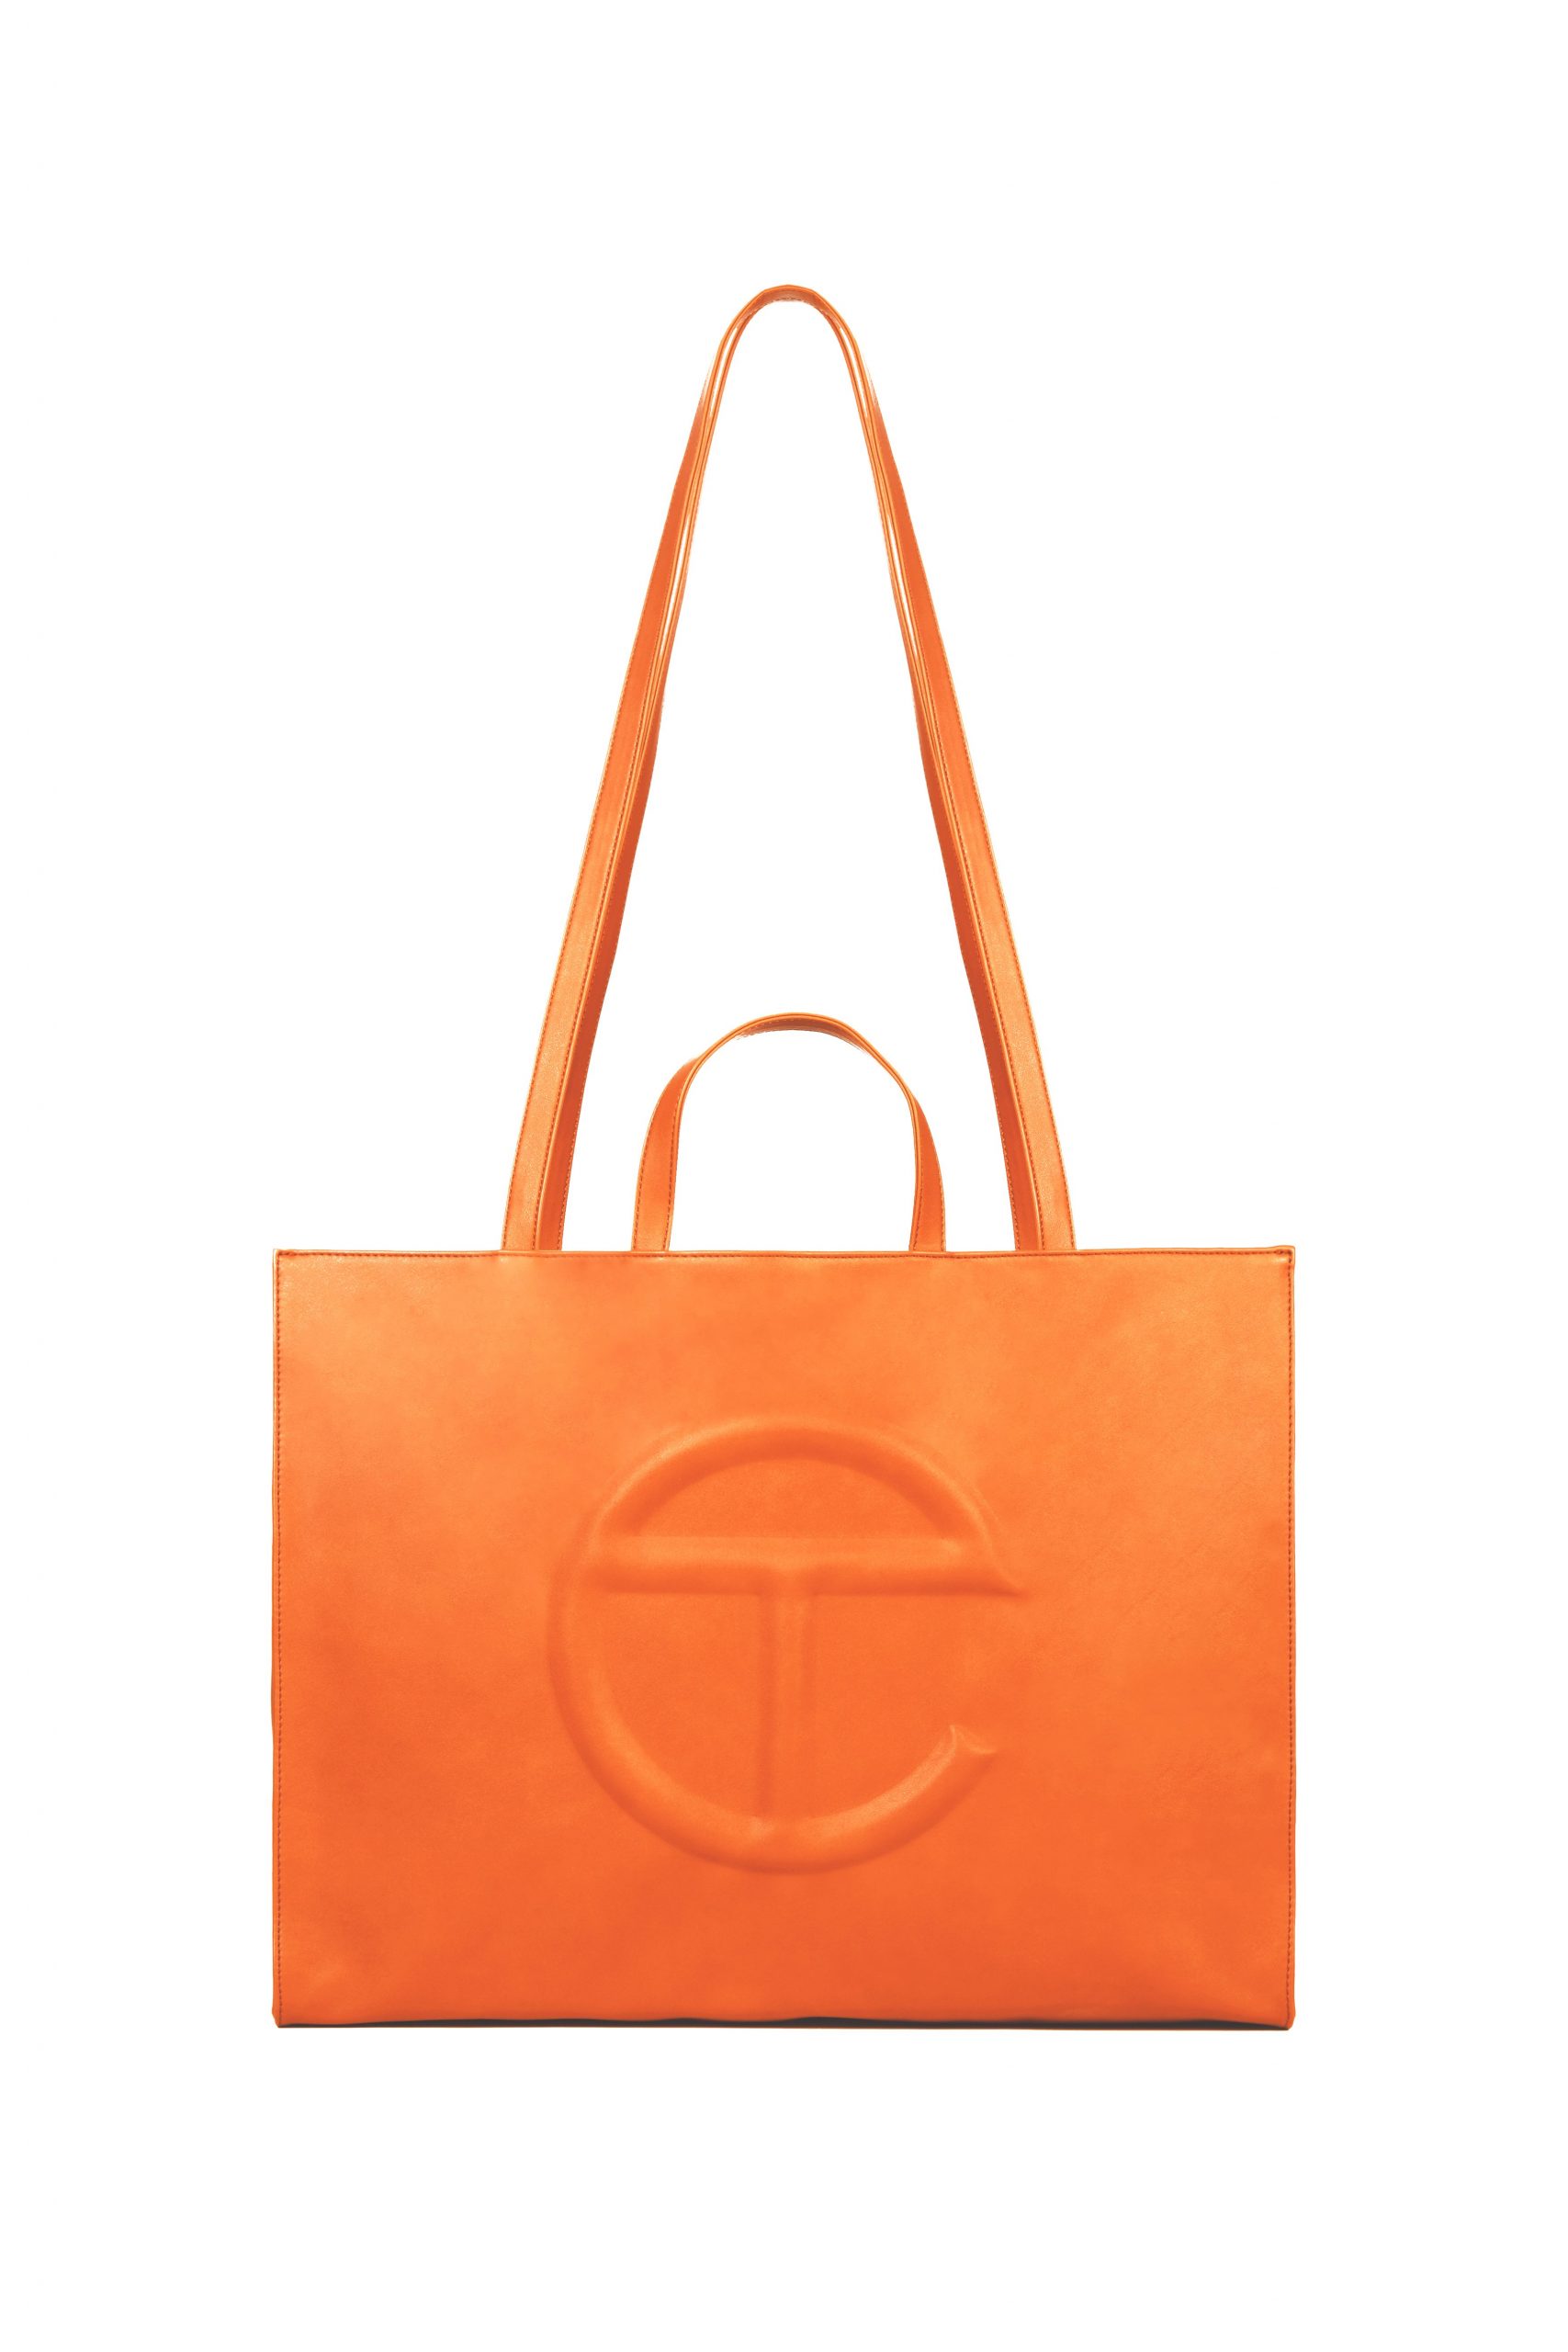 Large Orange Shopping Bag